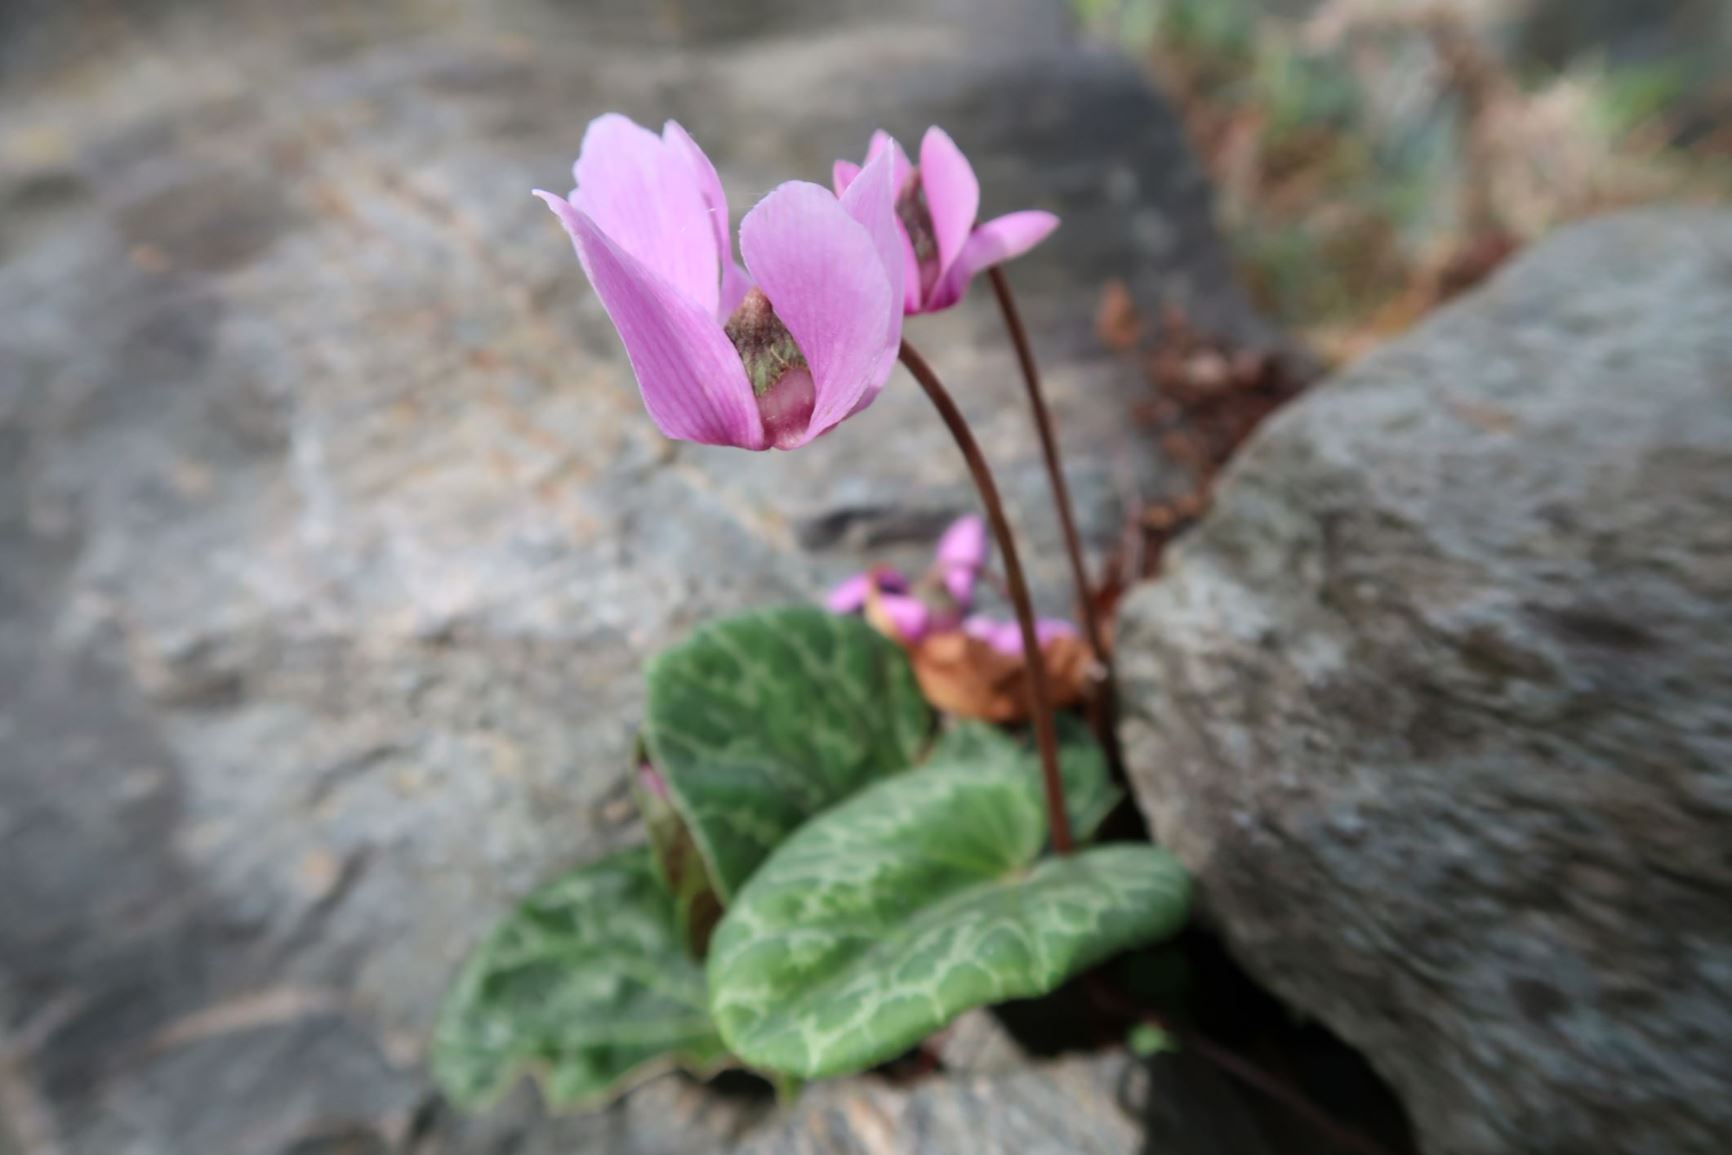 Cyclamen purpurascens - Sommer-Alpenveilchen, Wildes Alpenveilchen